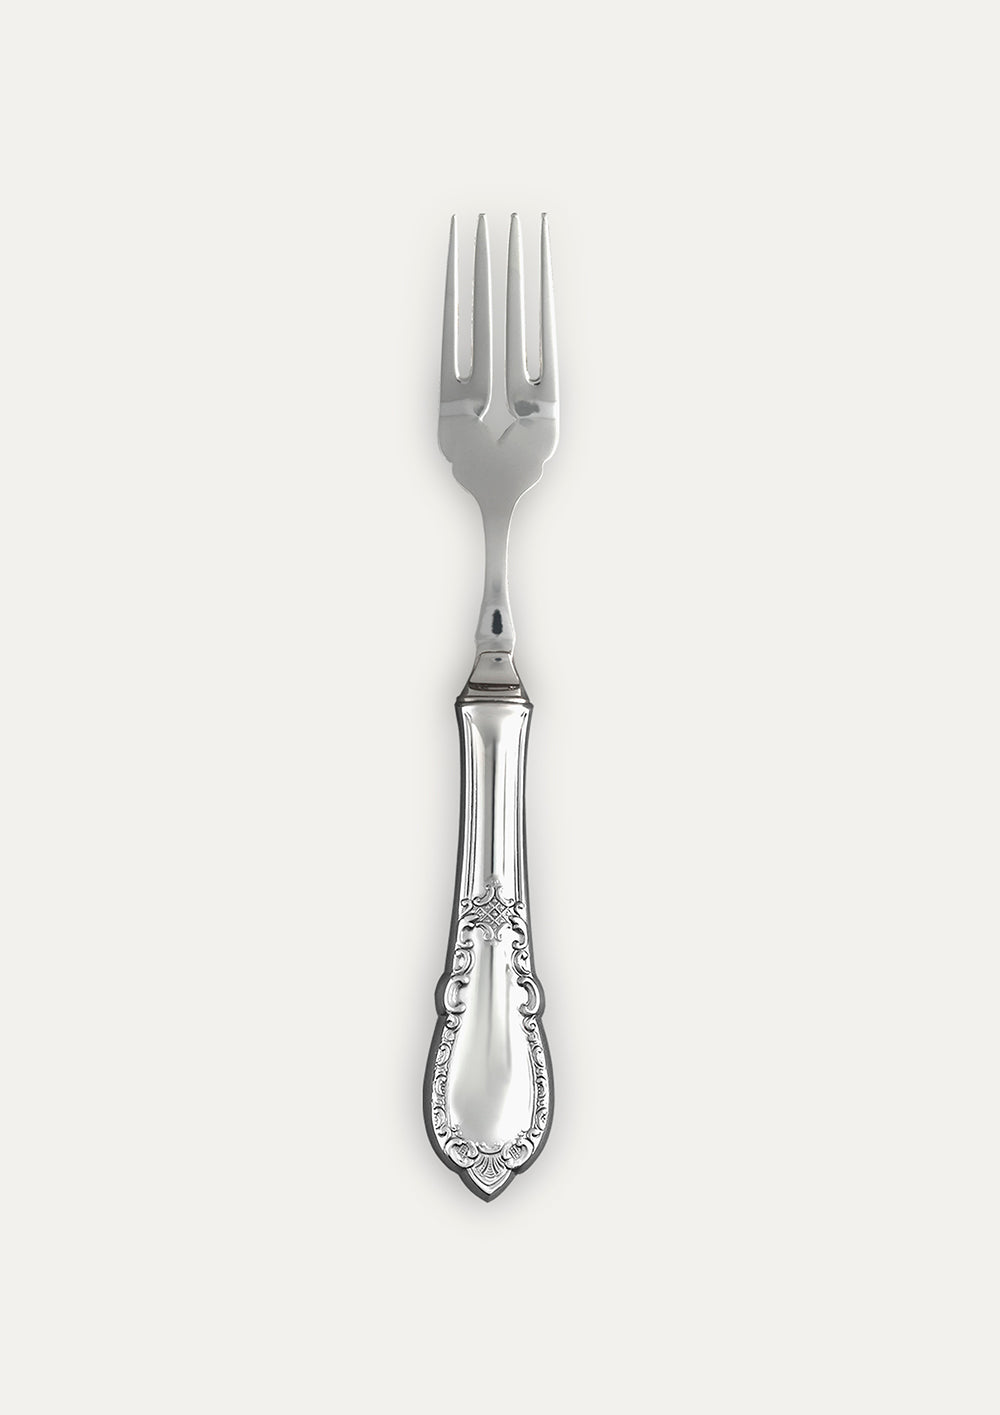 Noble fishing fork